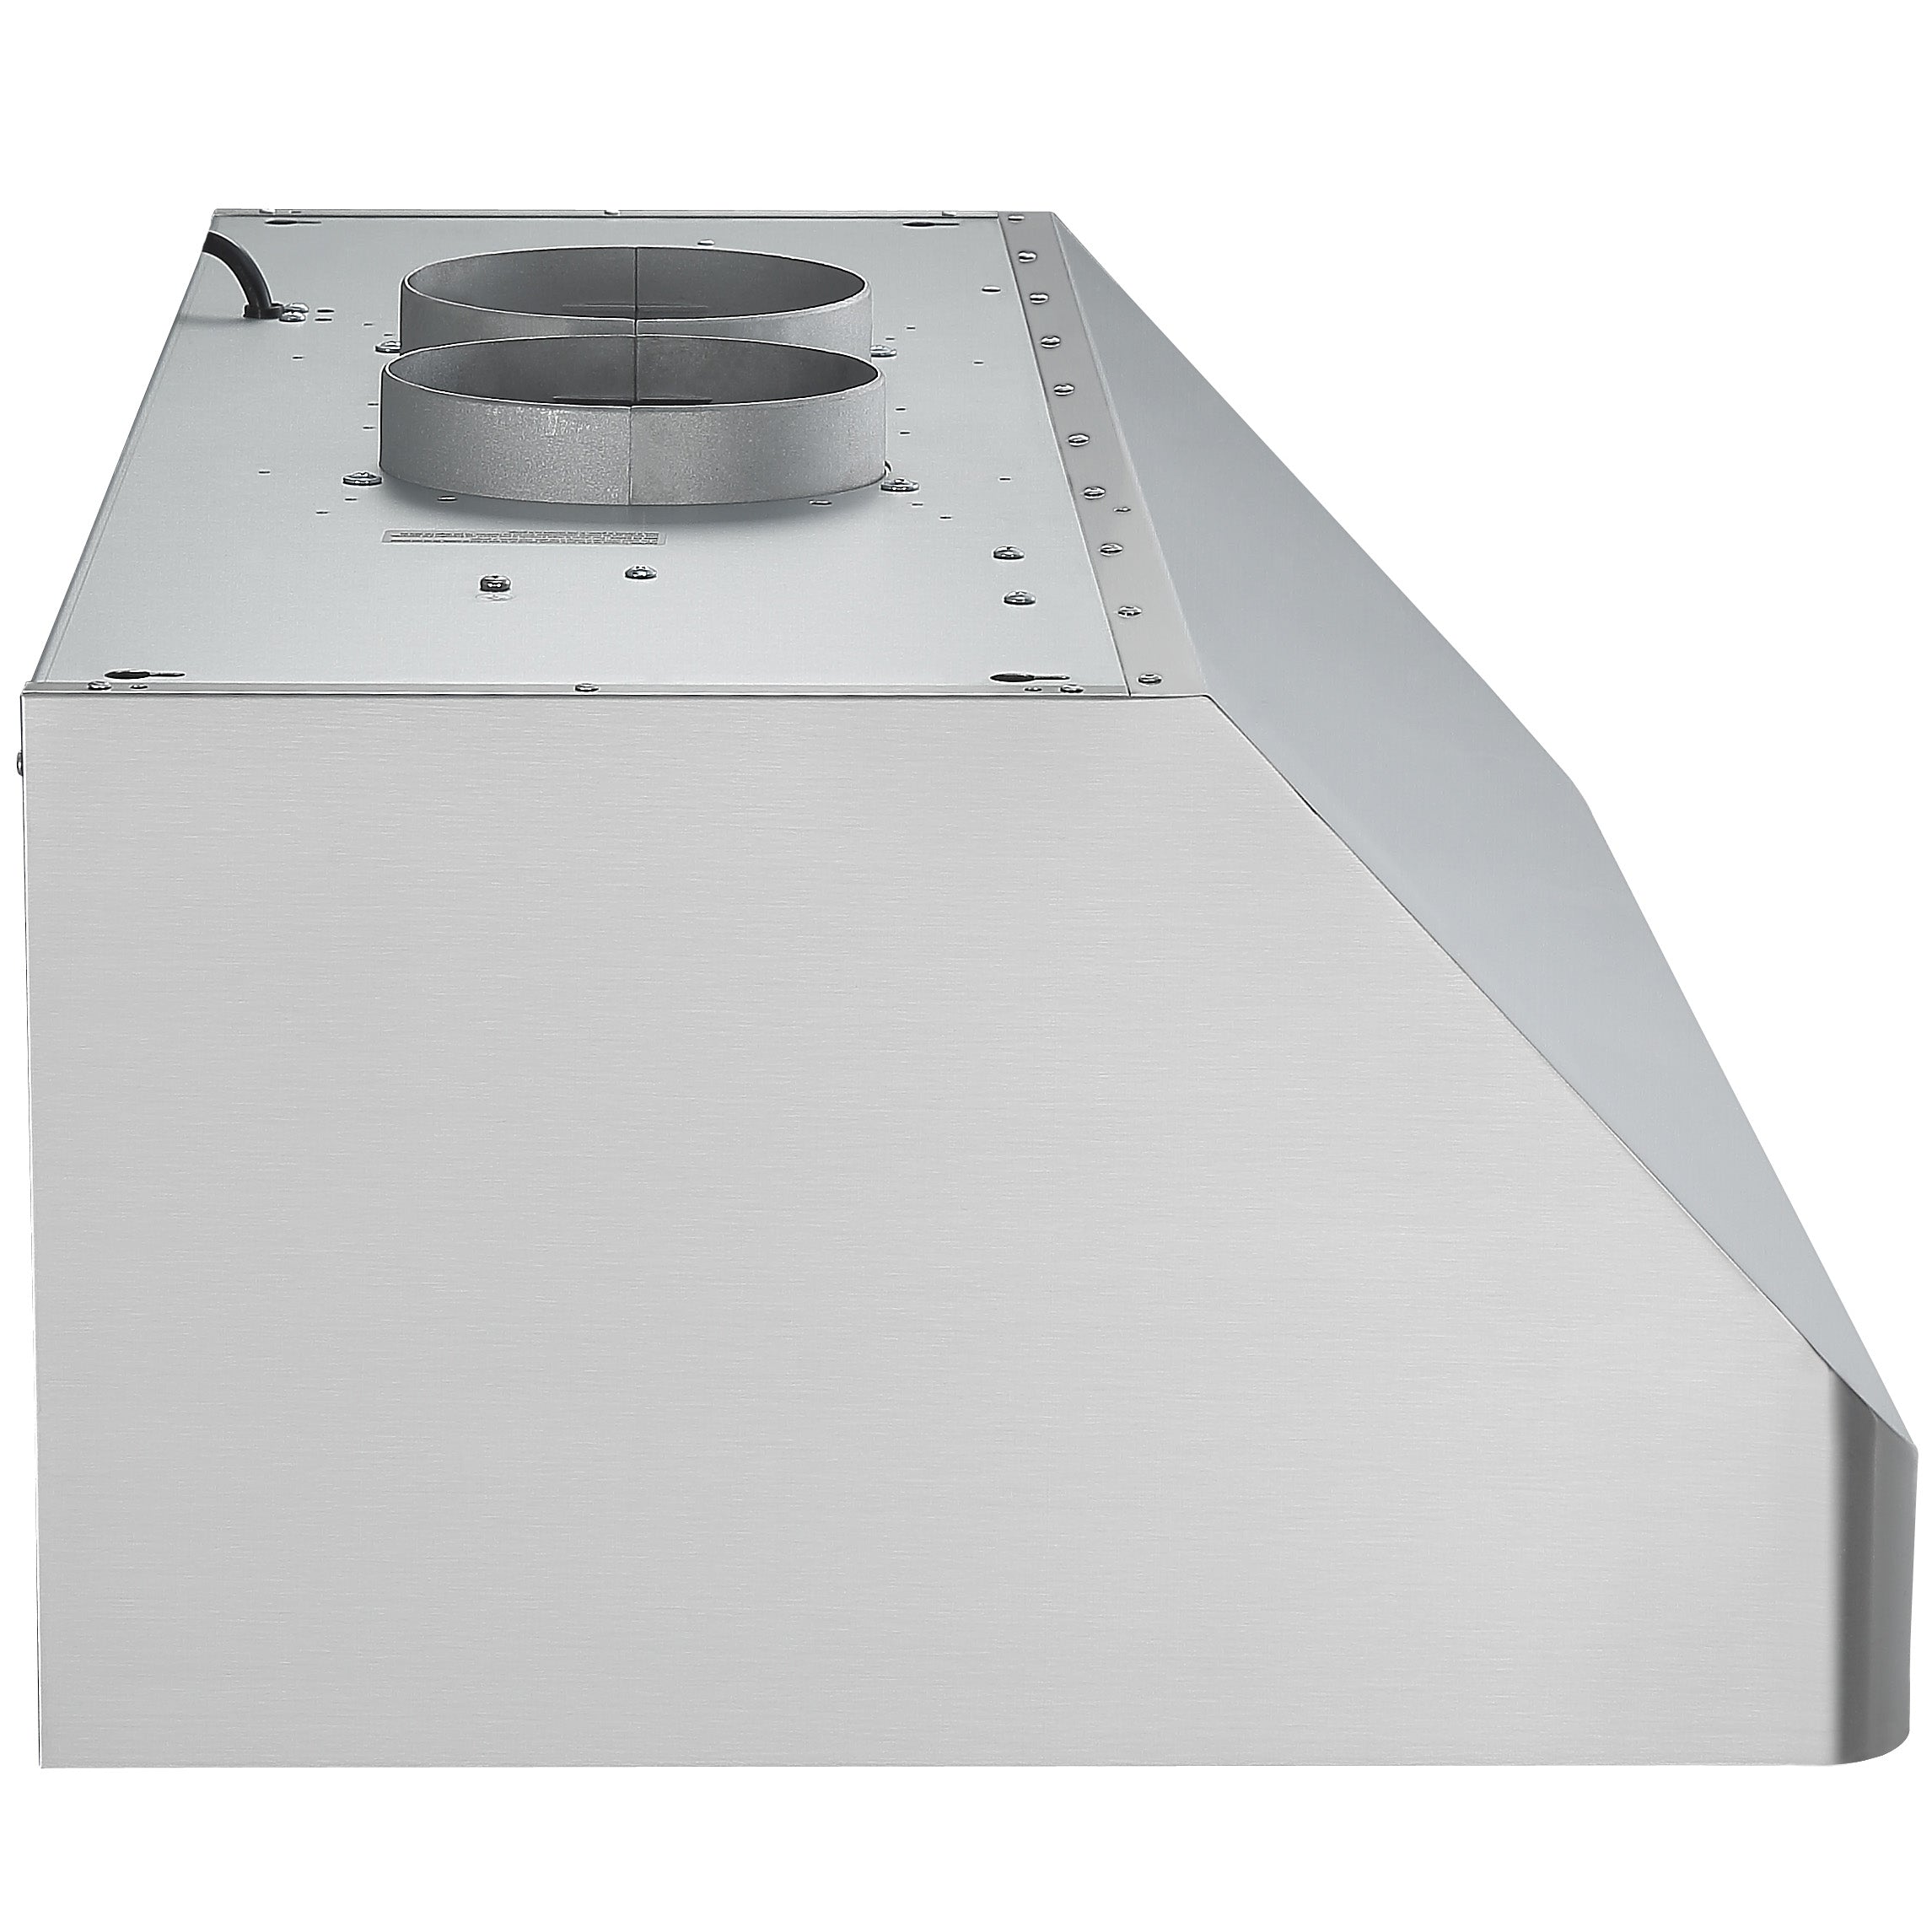 Hotte de cuisine en acier inoxydable à installation sous l’armoire Pro Série Turbo d’Ancona de 90 cm (36 po) avec veilleuse